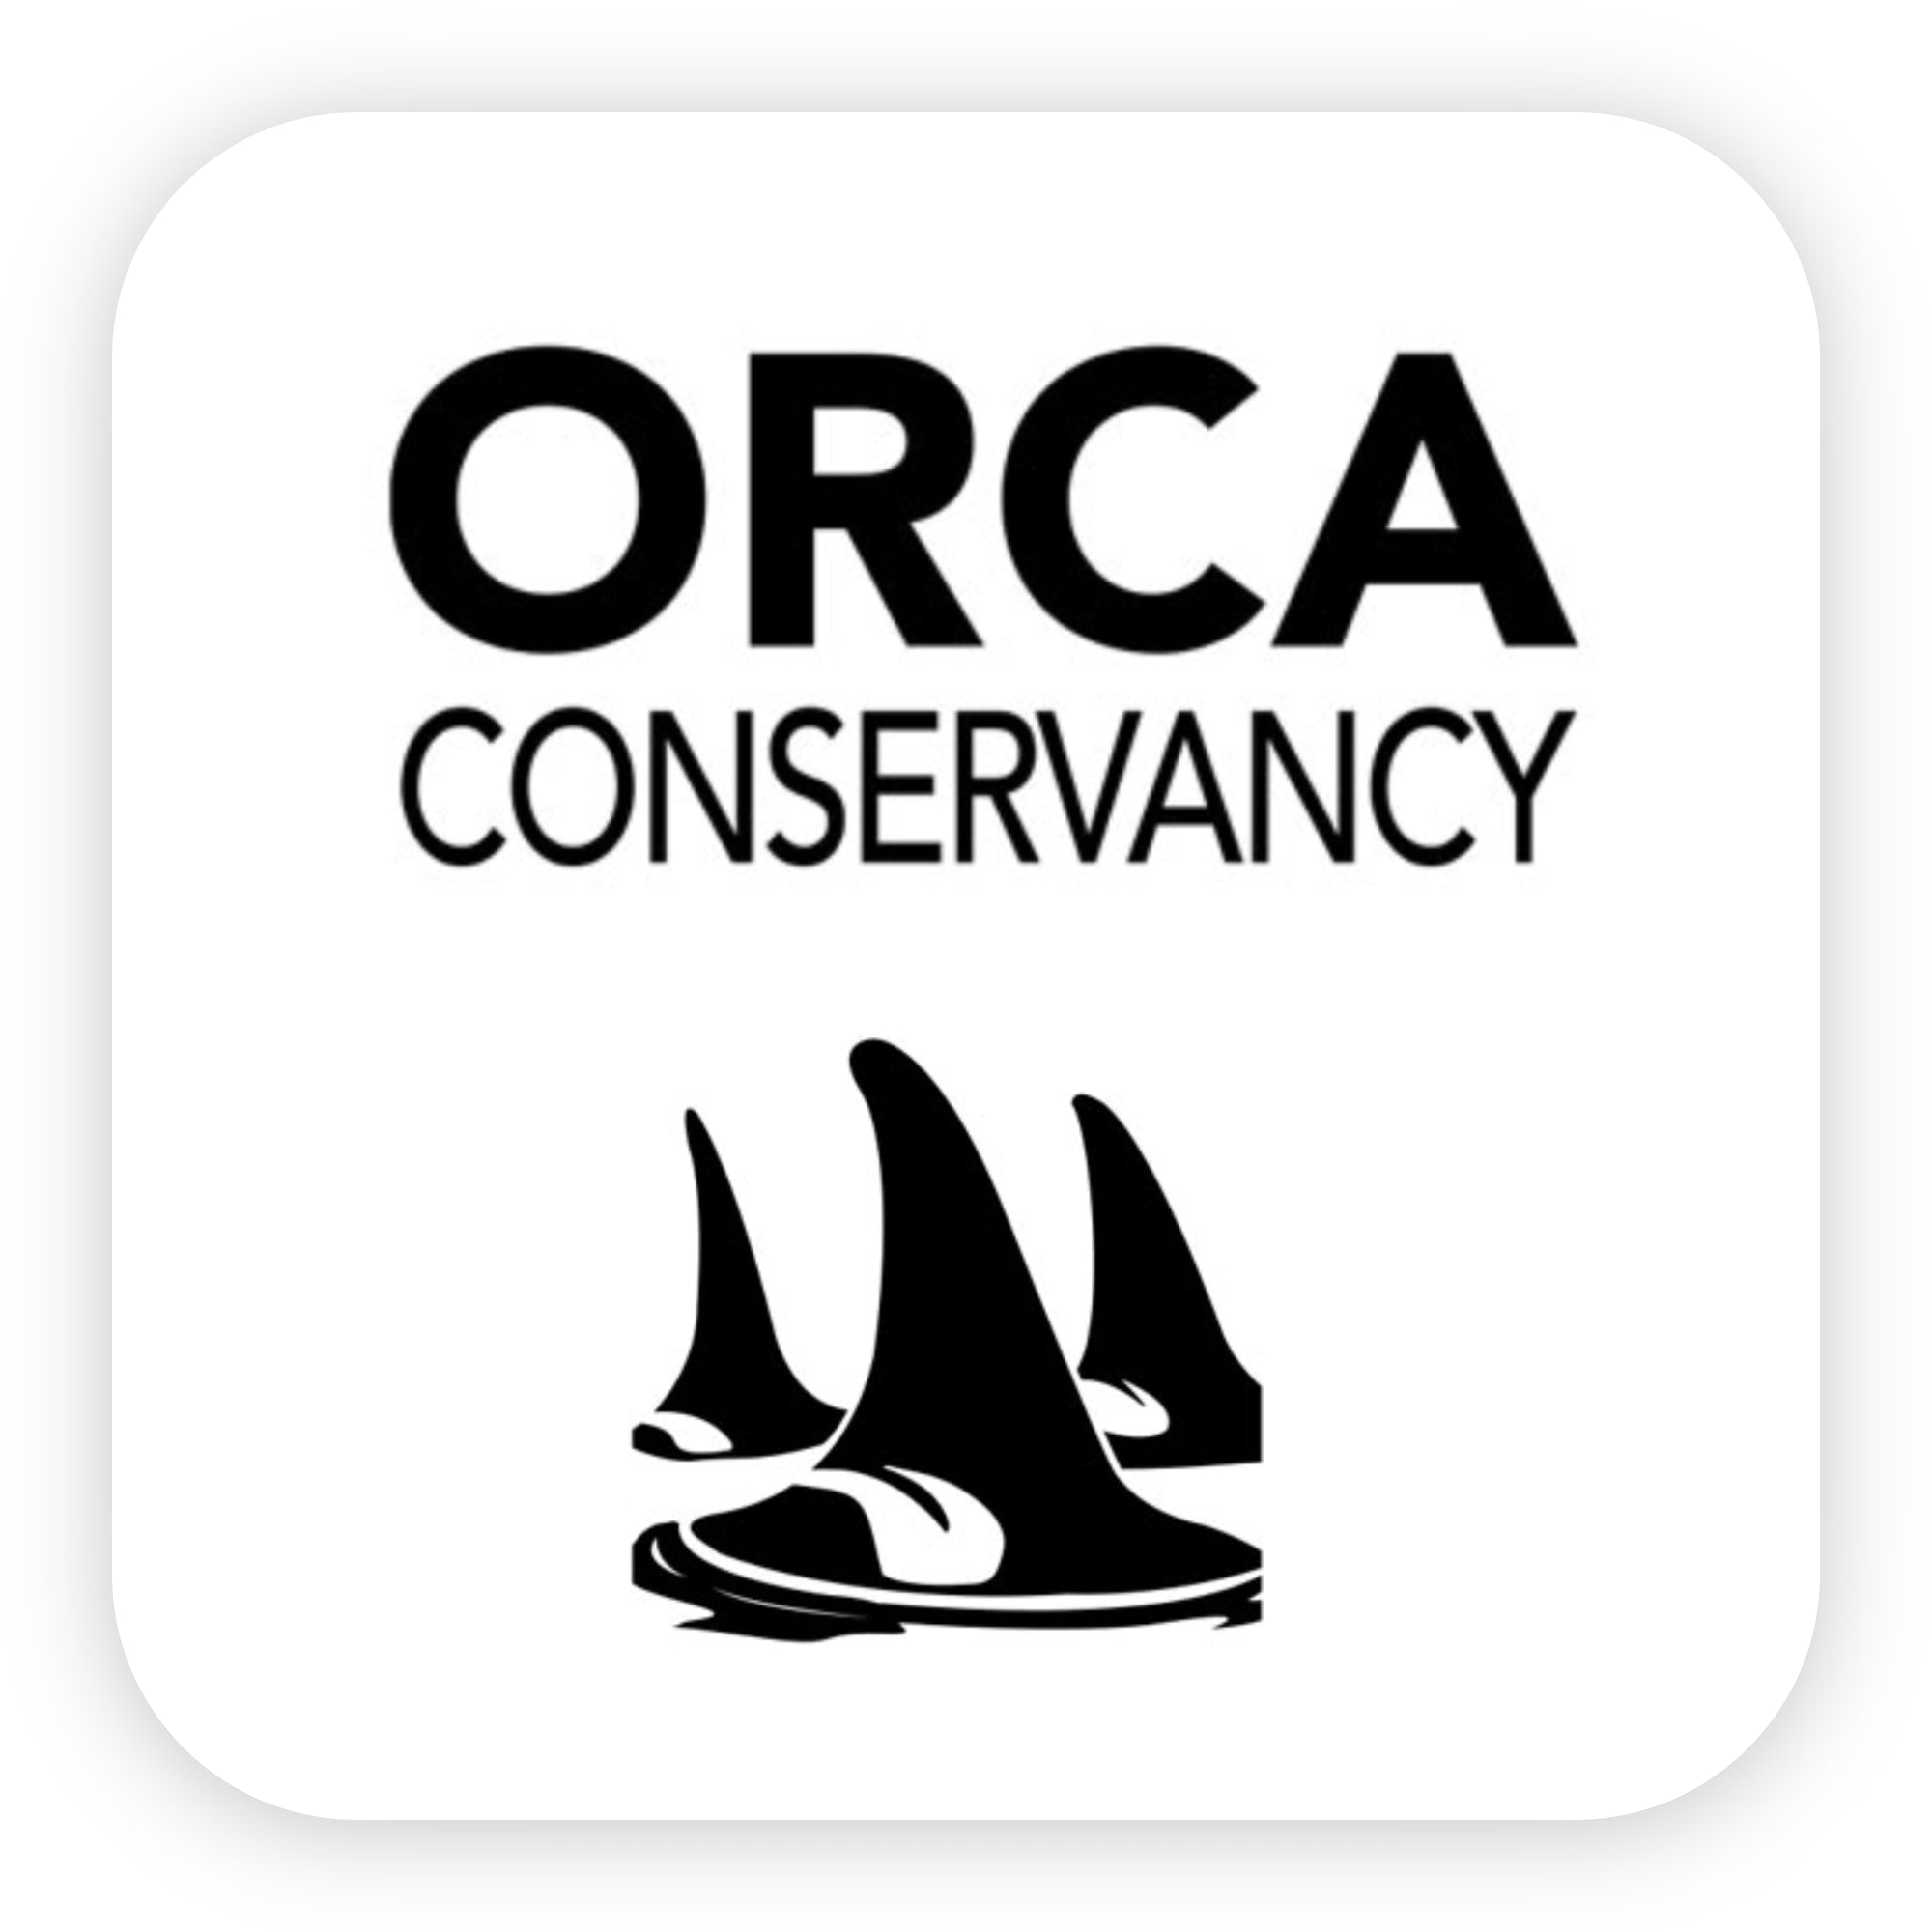 orca conservancy